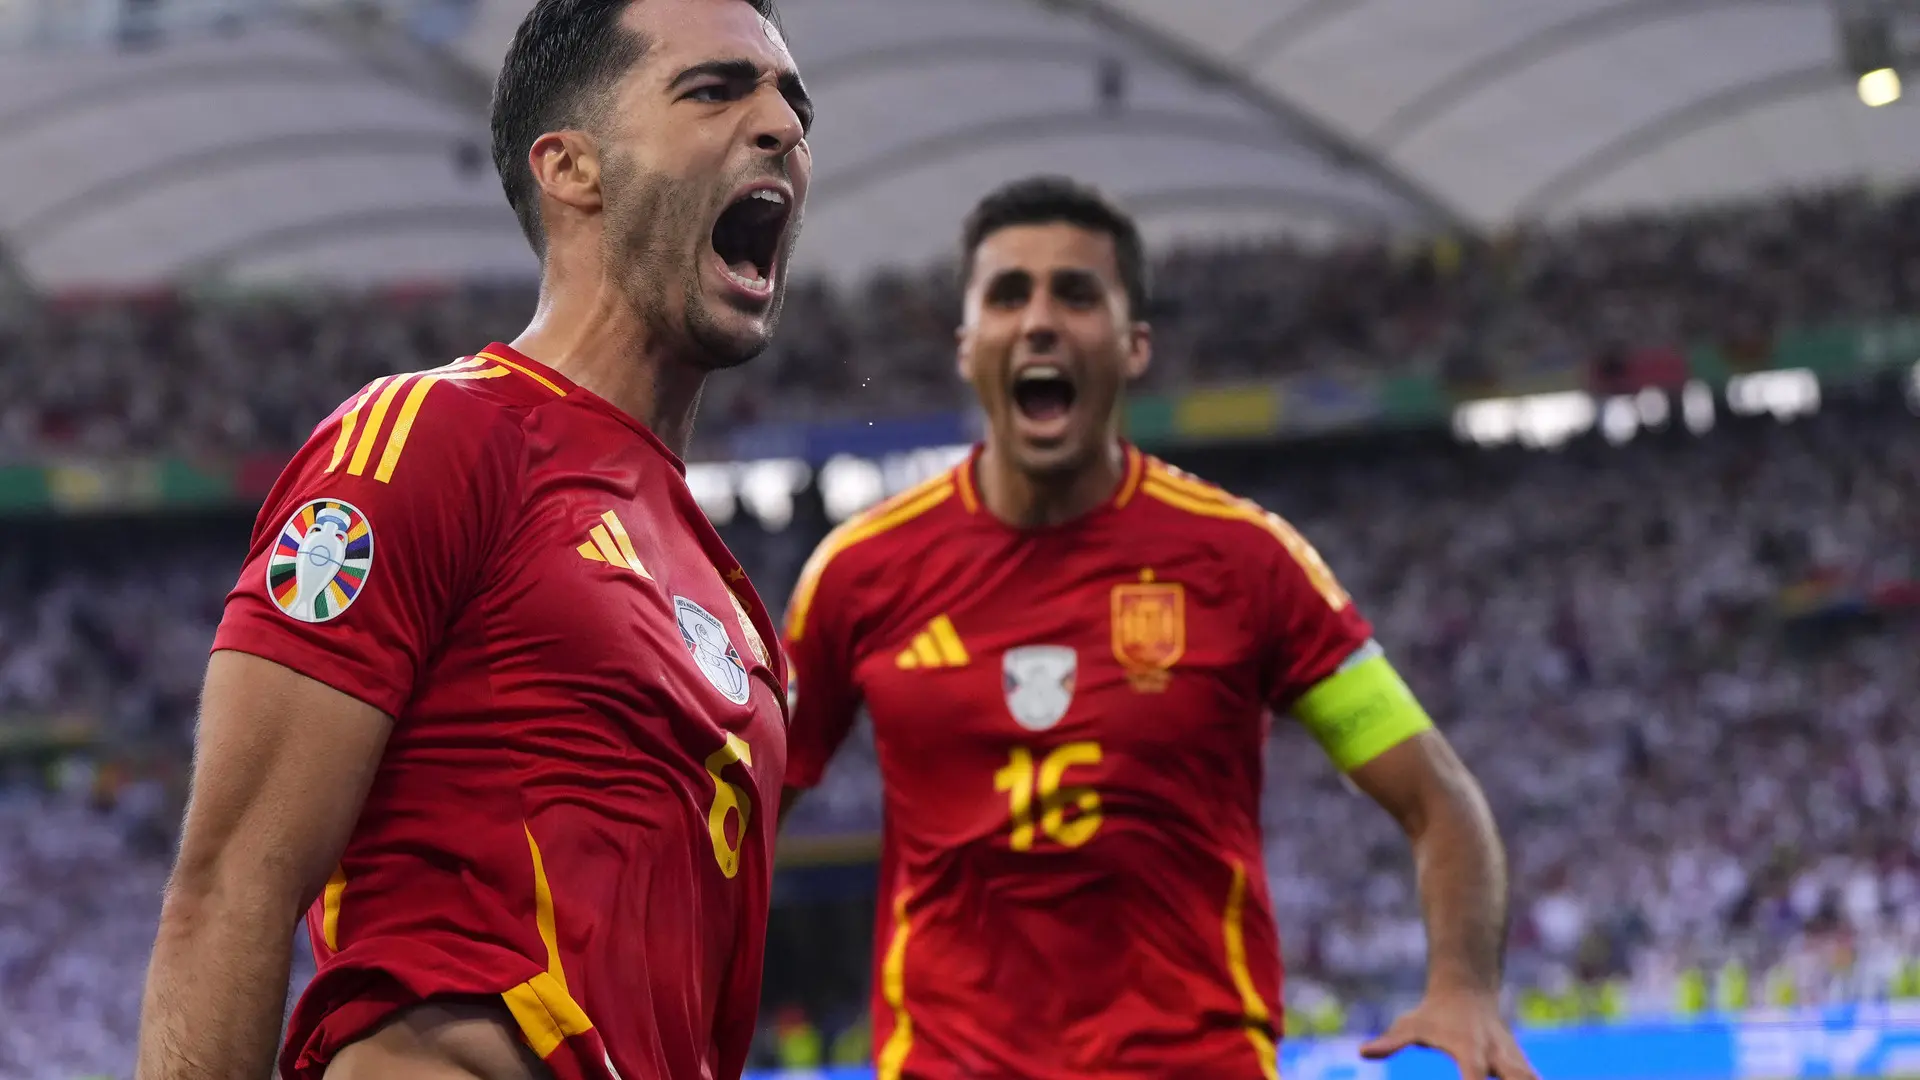 Mehr als 300.000 Menschen fordern online eine Wiederholung des Spiels Spanien-Deutschland aufgrund von Schiedsrichterentscheidungen